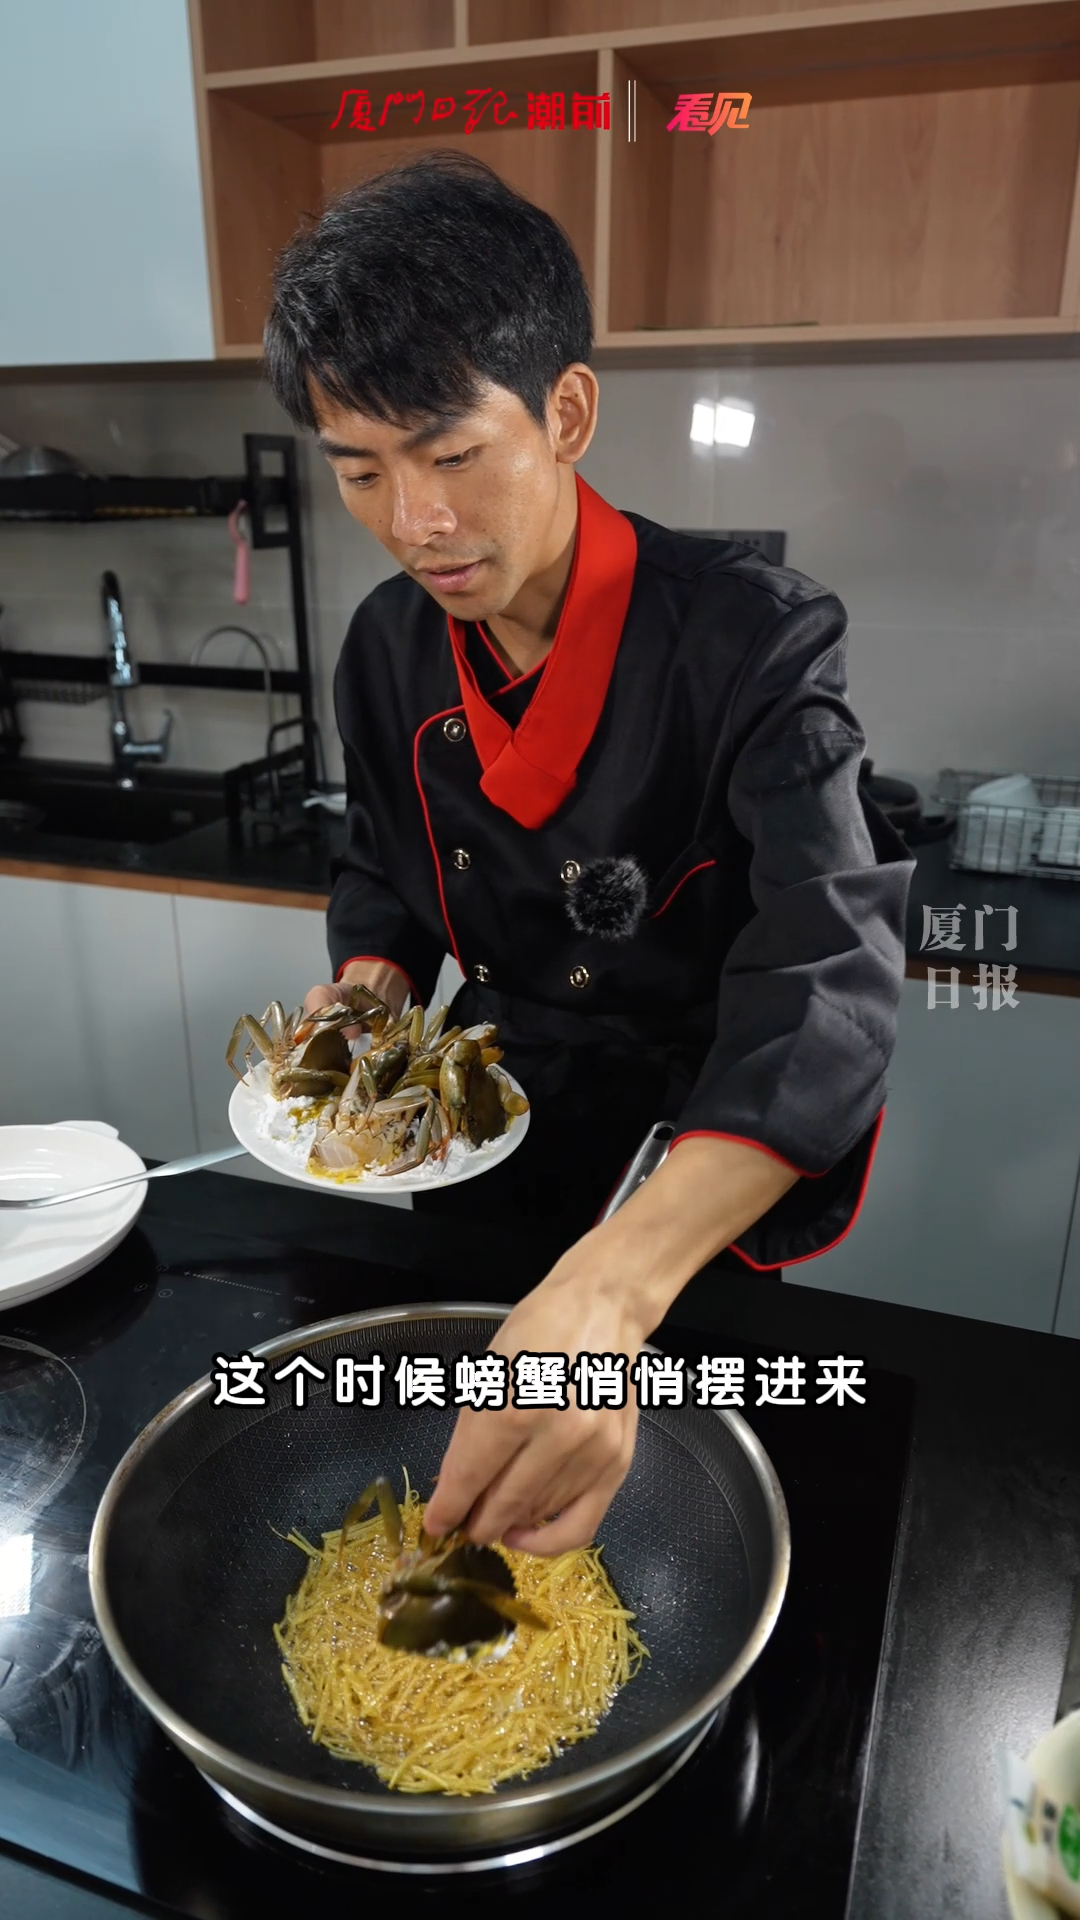 厦门这位网红厨师粉丝量超3000万,全网都在围观他做闽南菜!